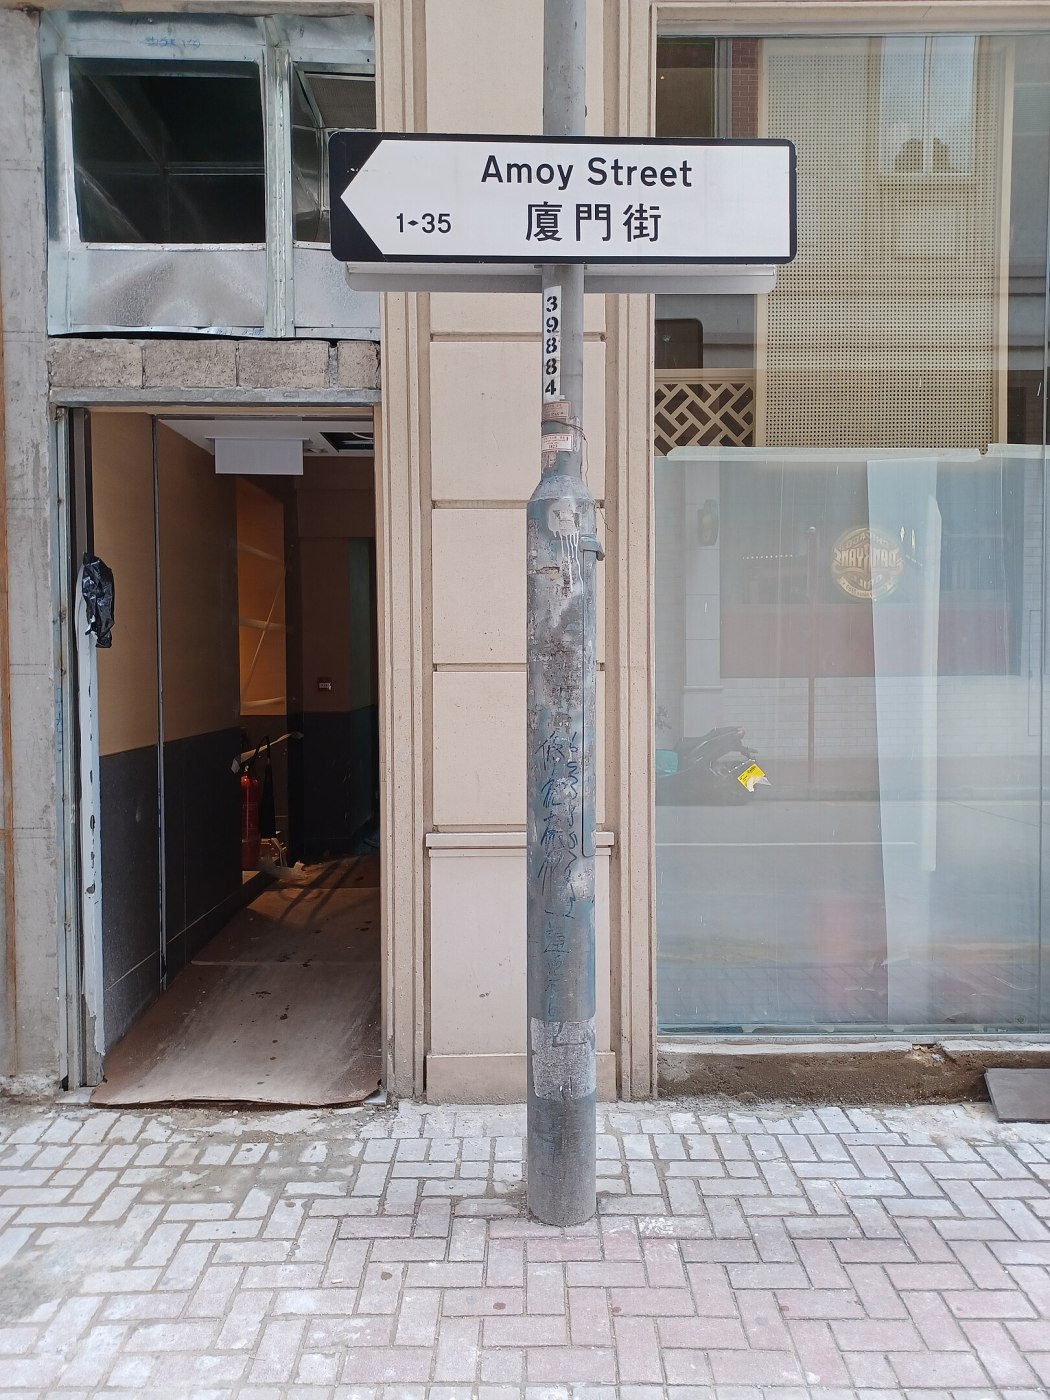 Amoy Street, Wan Chai, Hong Kong. File photo: Wikicommons.